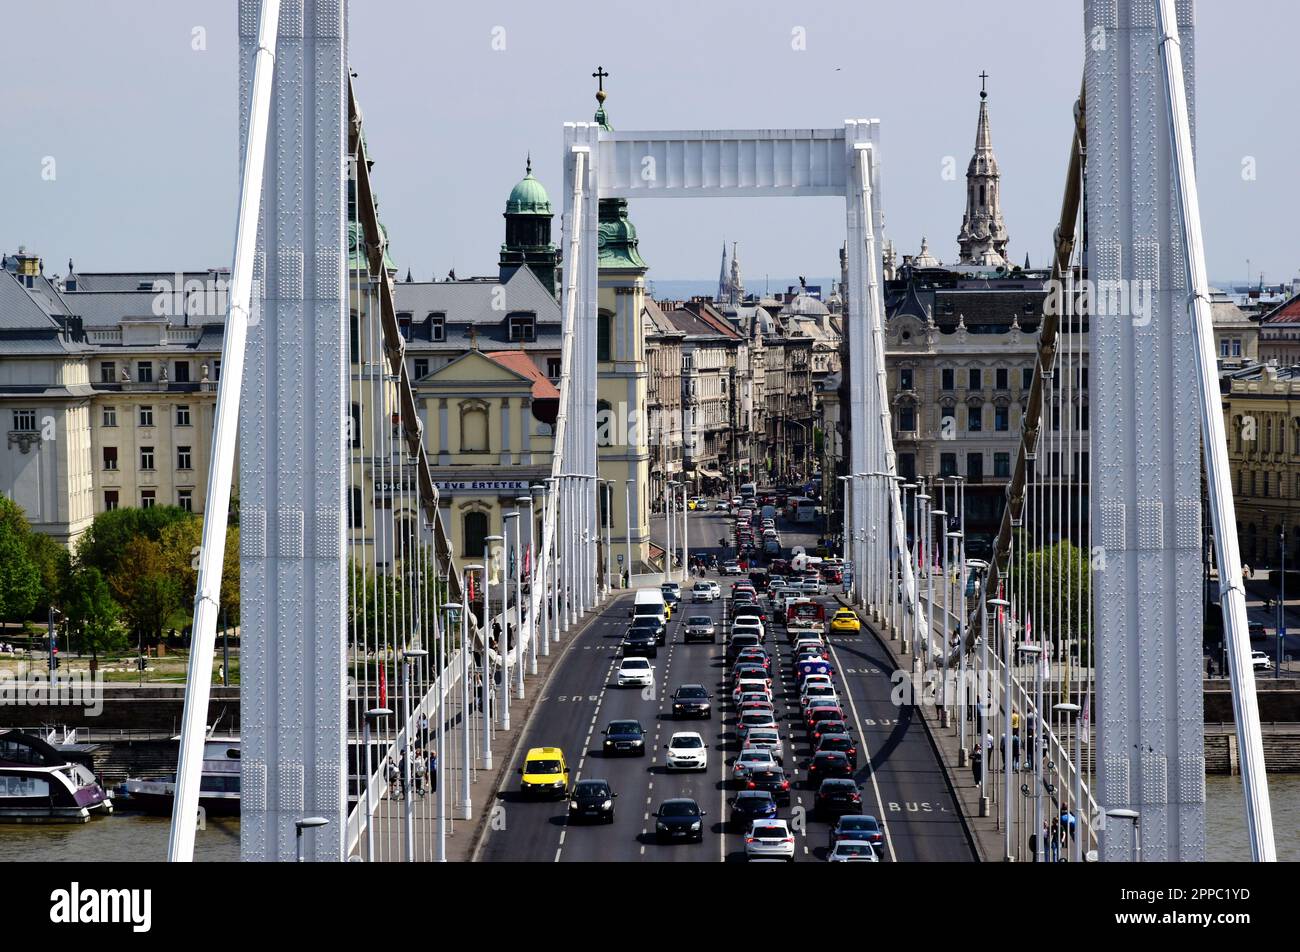 Elisabeth-Brücke in Budapest. Perspektivische Ansicht. Weißer Stahlrahmen. autobahn mit Autoverkehr. Alte europäische Architektur. Boote auf der Donau Stockfoto